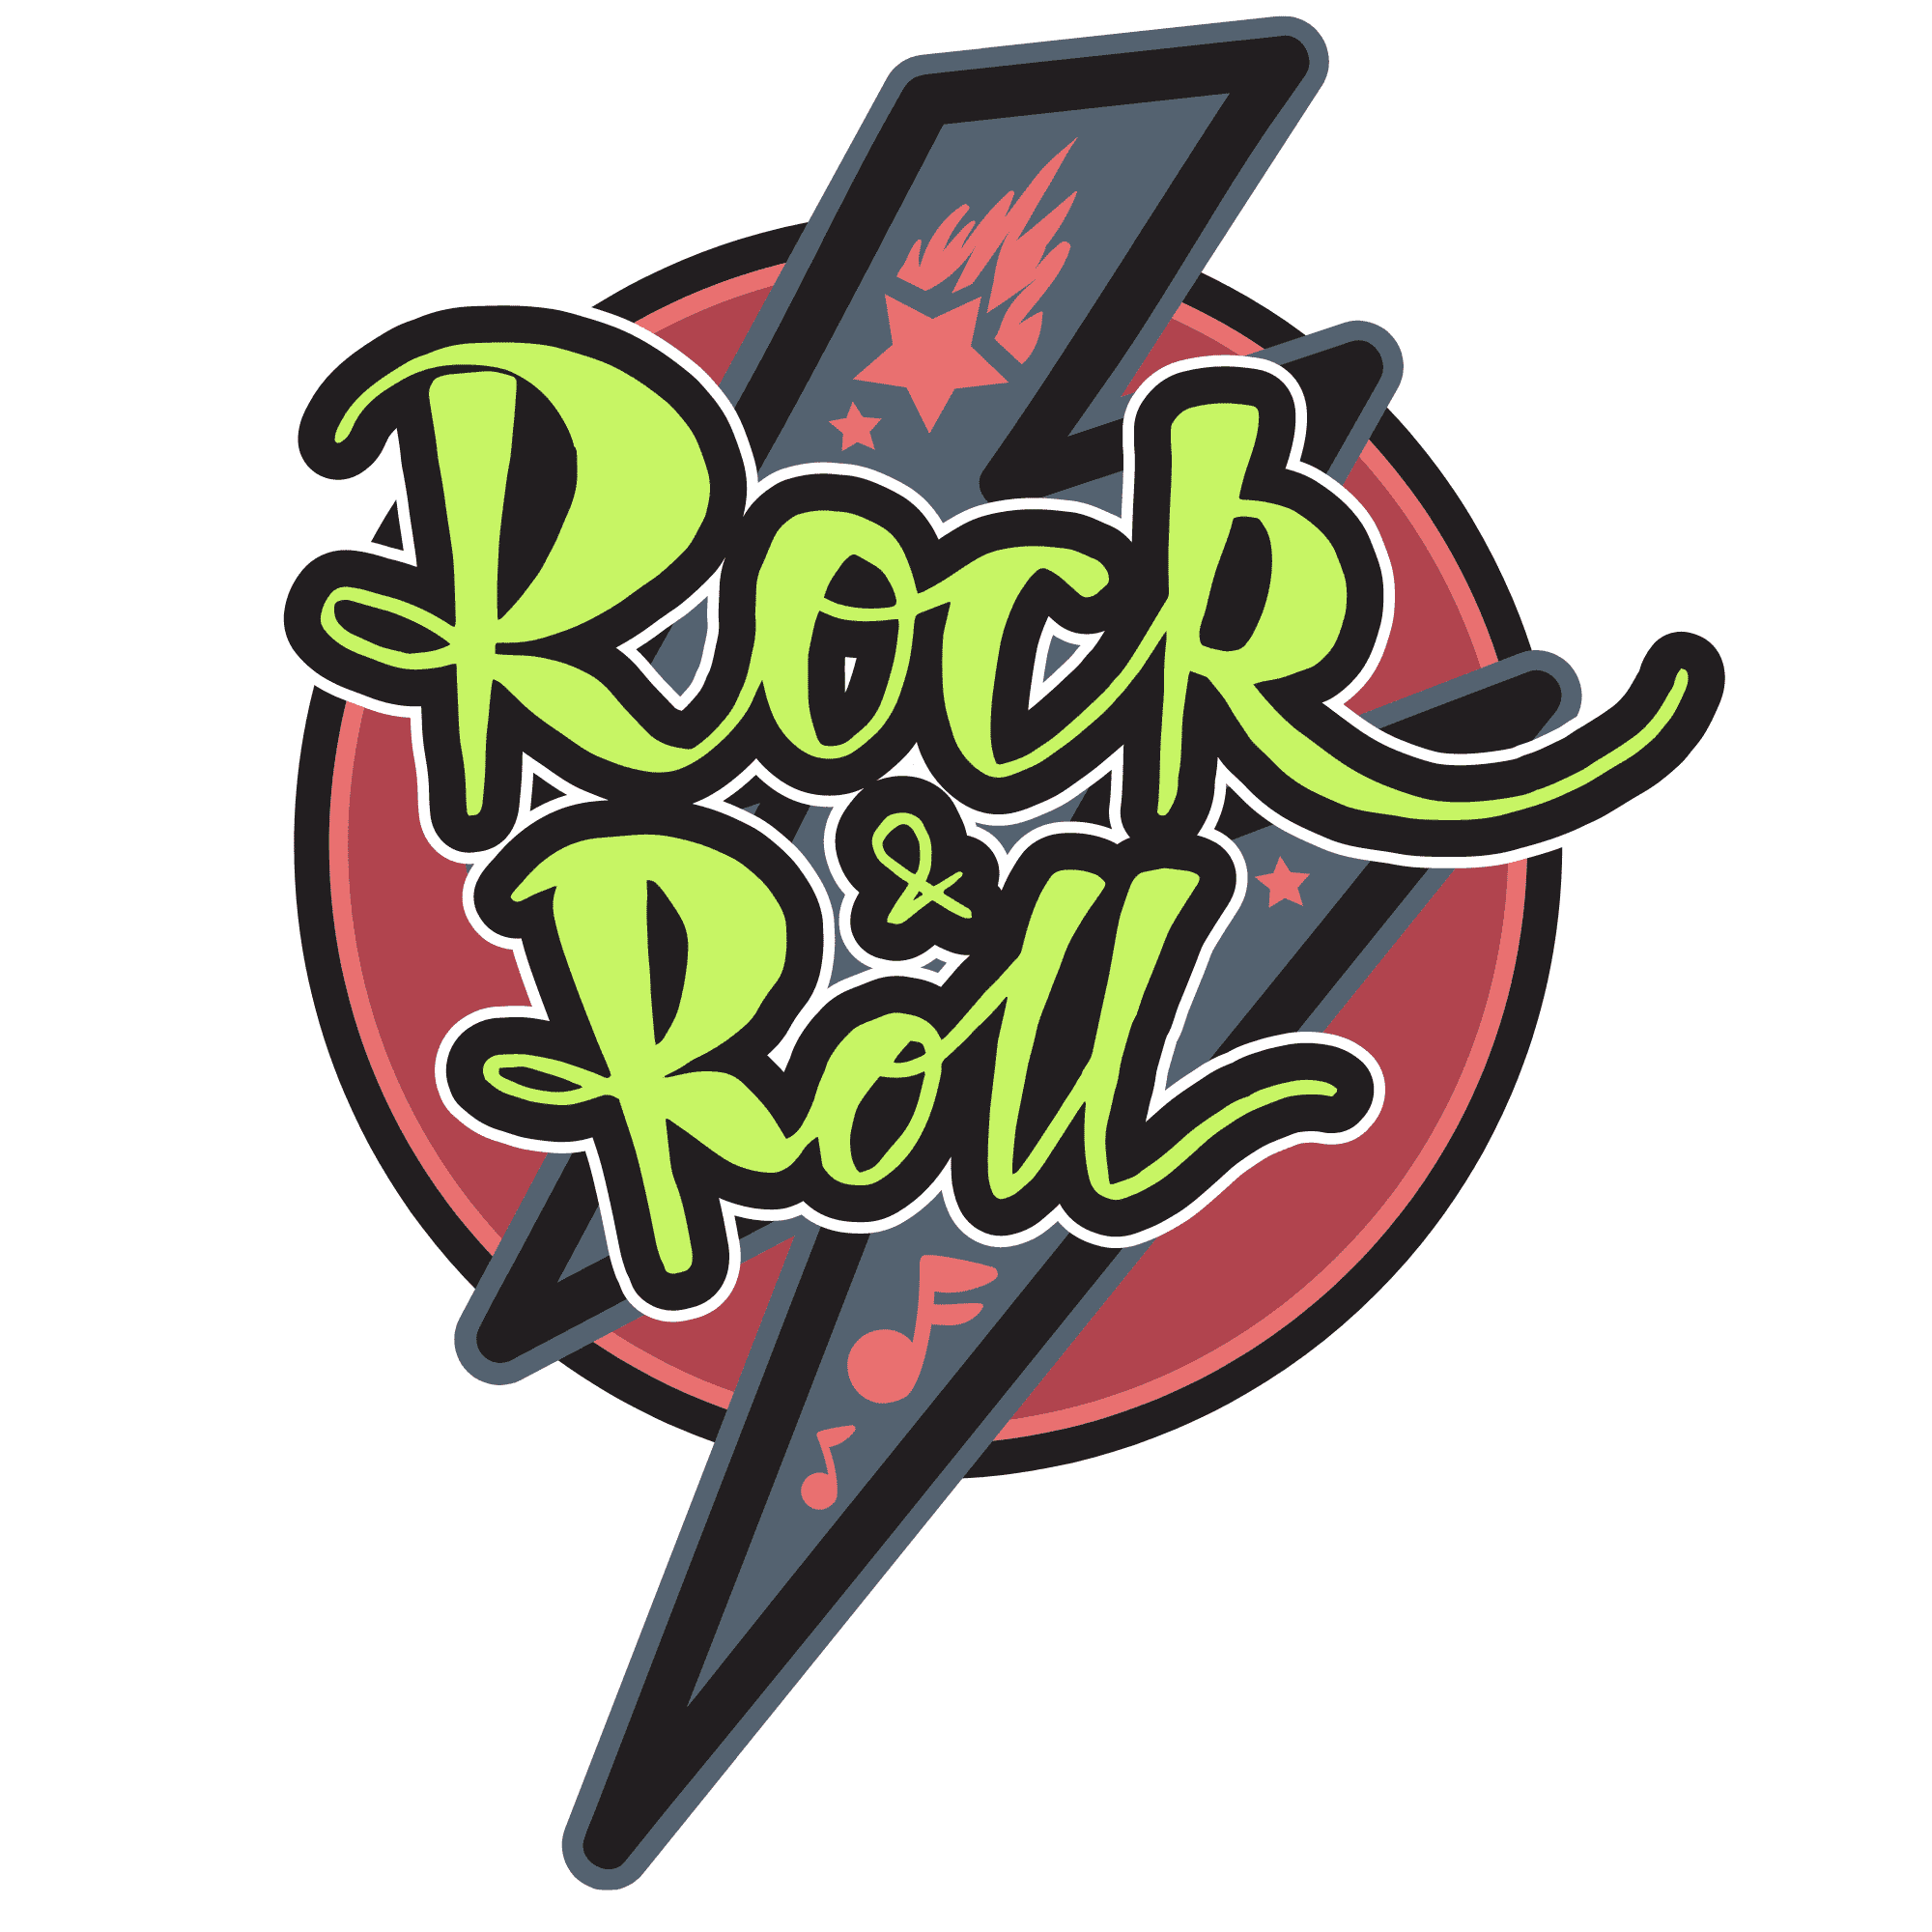 Rock-n-Roll